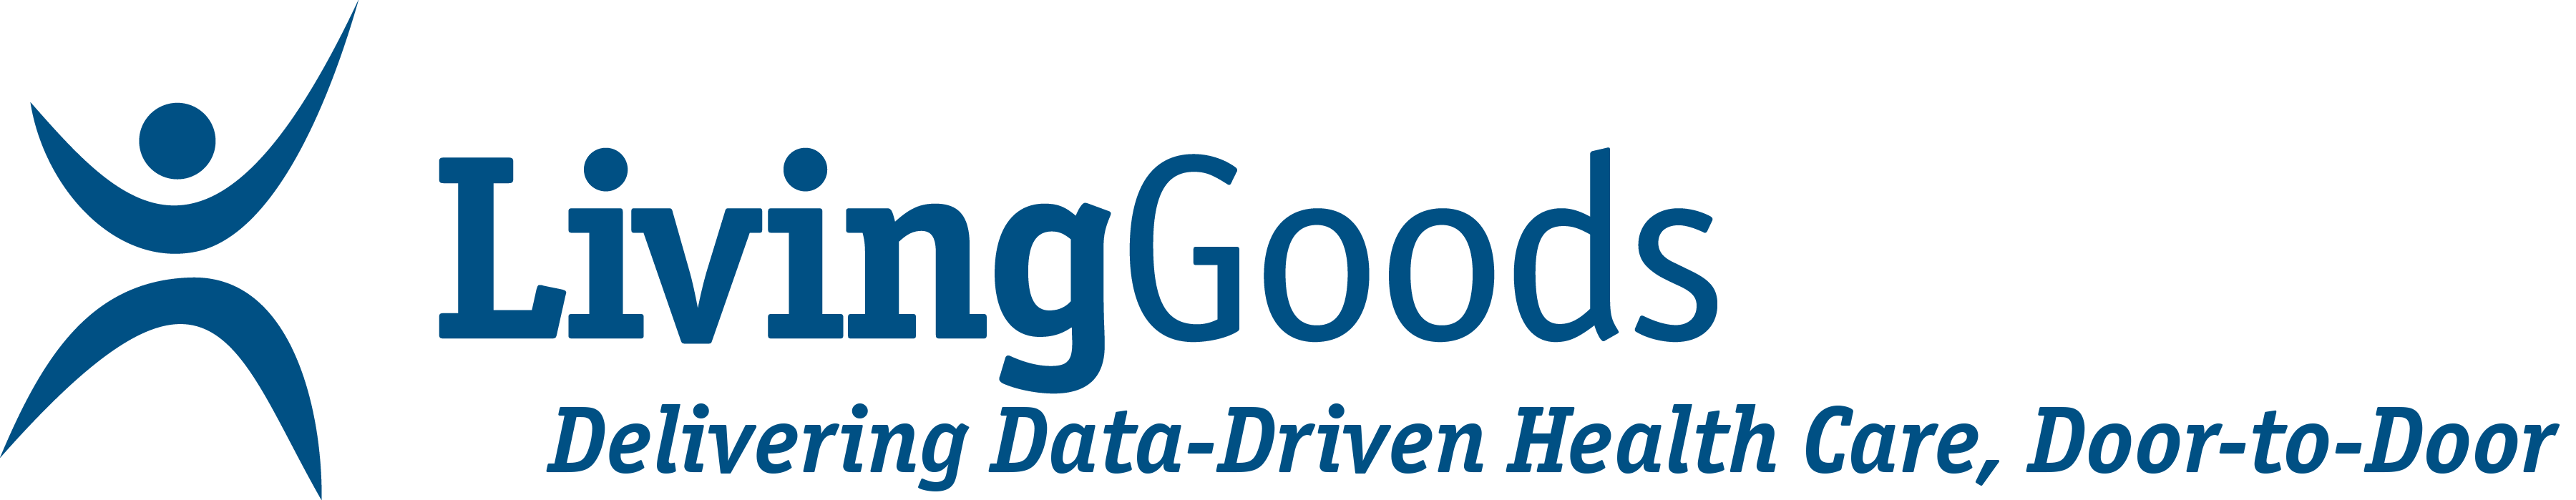 Living Goods logo